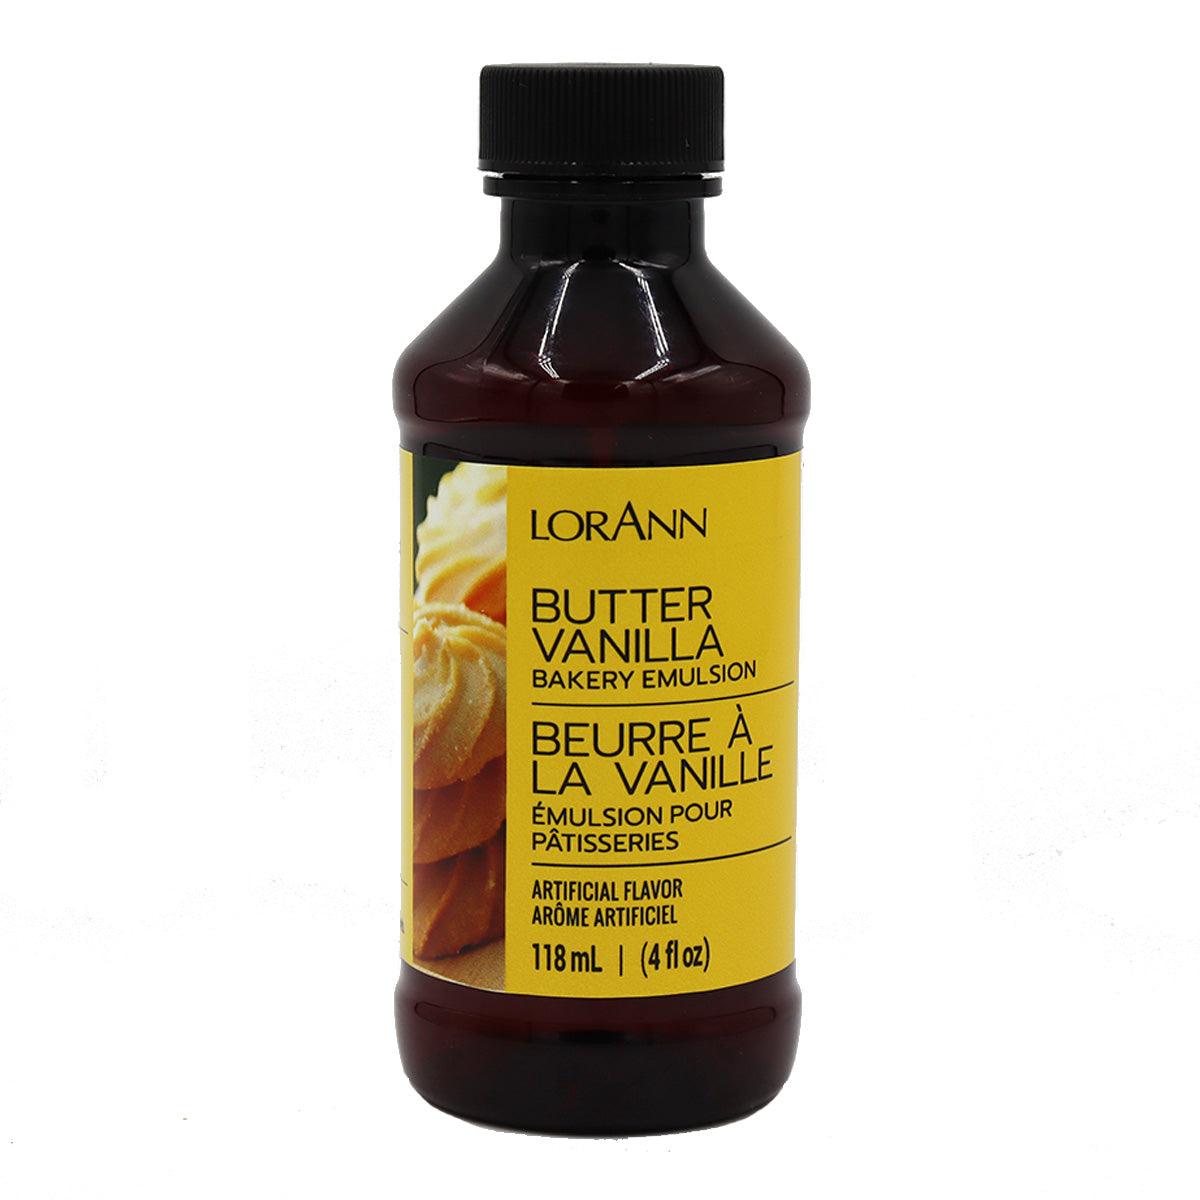 Butter Vanilla Bakery Emulsion 4 fl oz (118ml) - ViaCheff.com